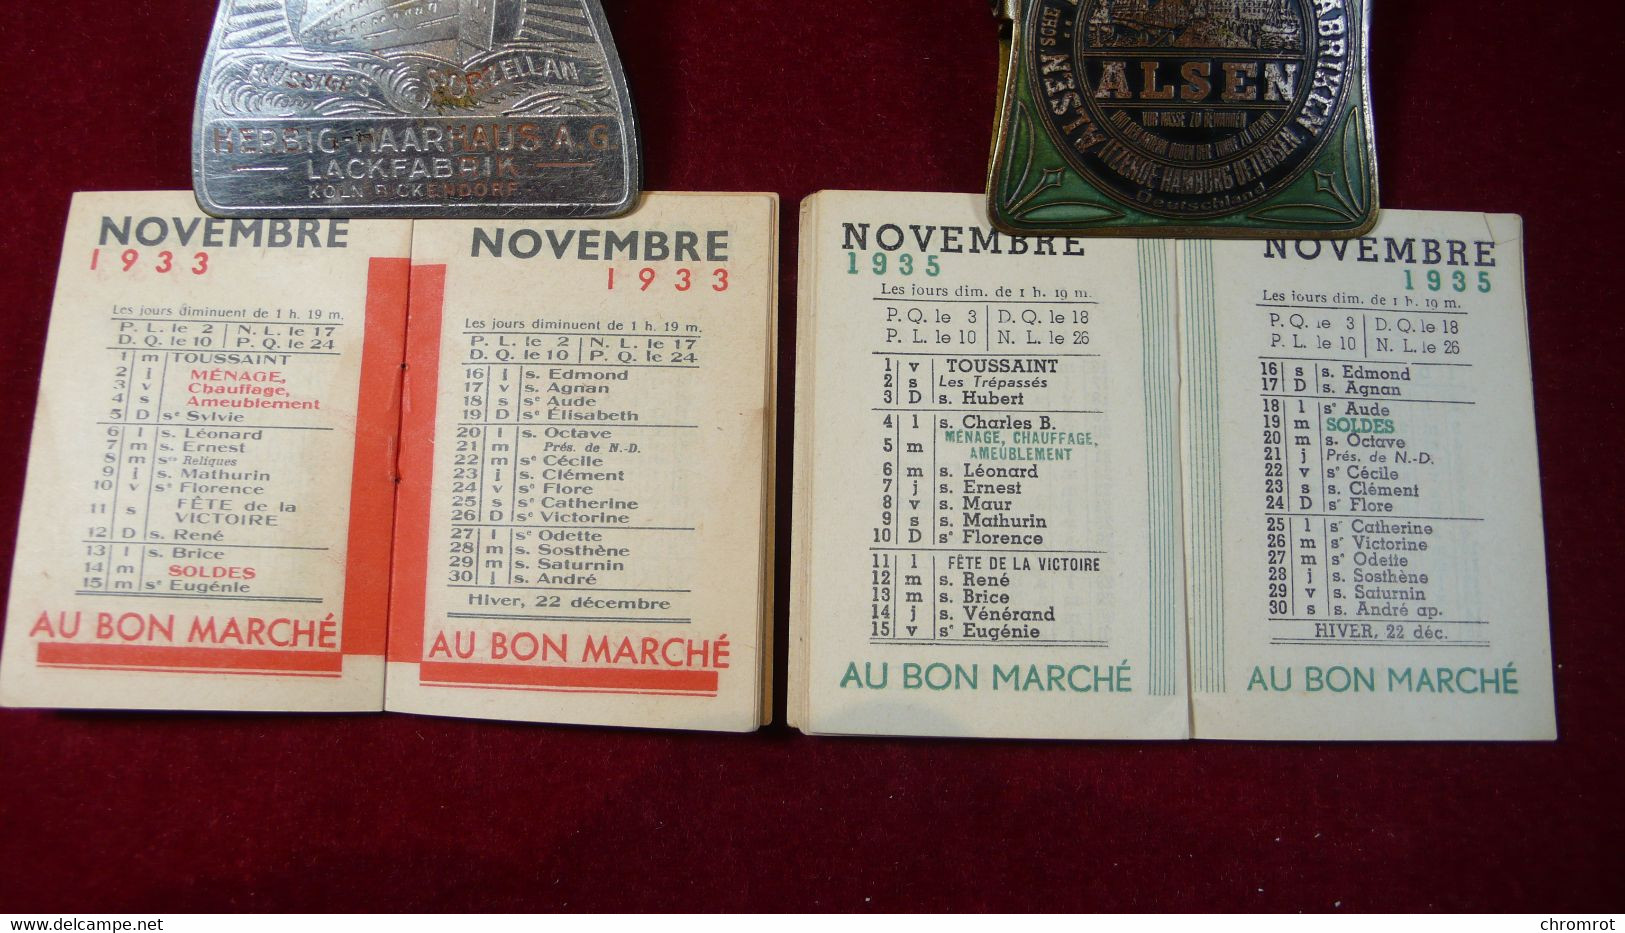 2 Mini Calendar Kalender AU BON MARCHÉ Vintage 1933 / 1935  Maison A. Boucicant Paris 12 Monats Kalender